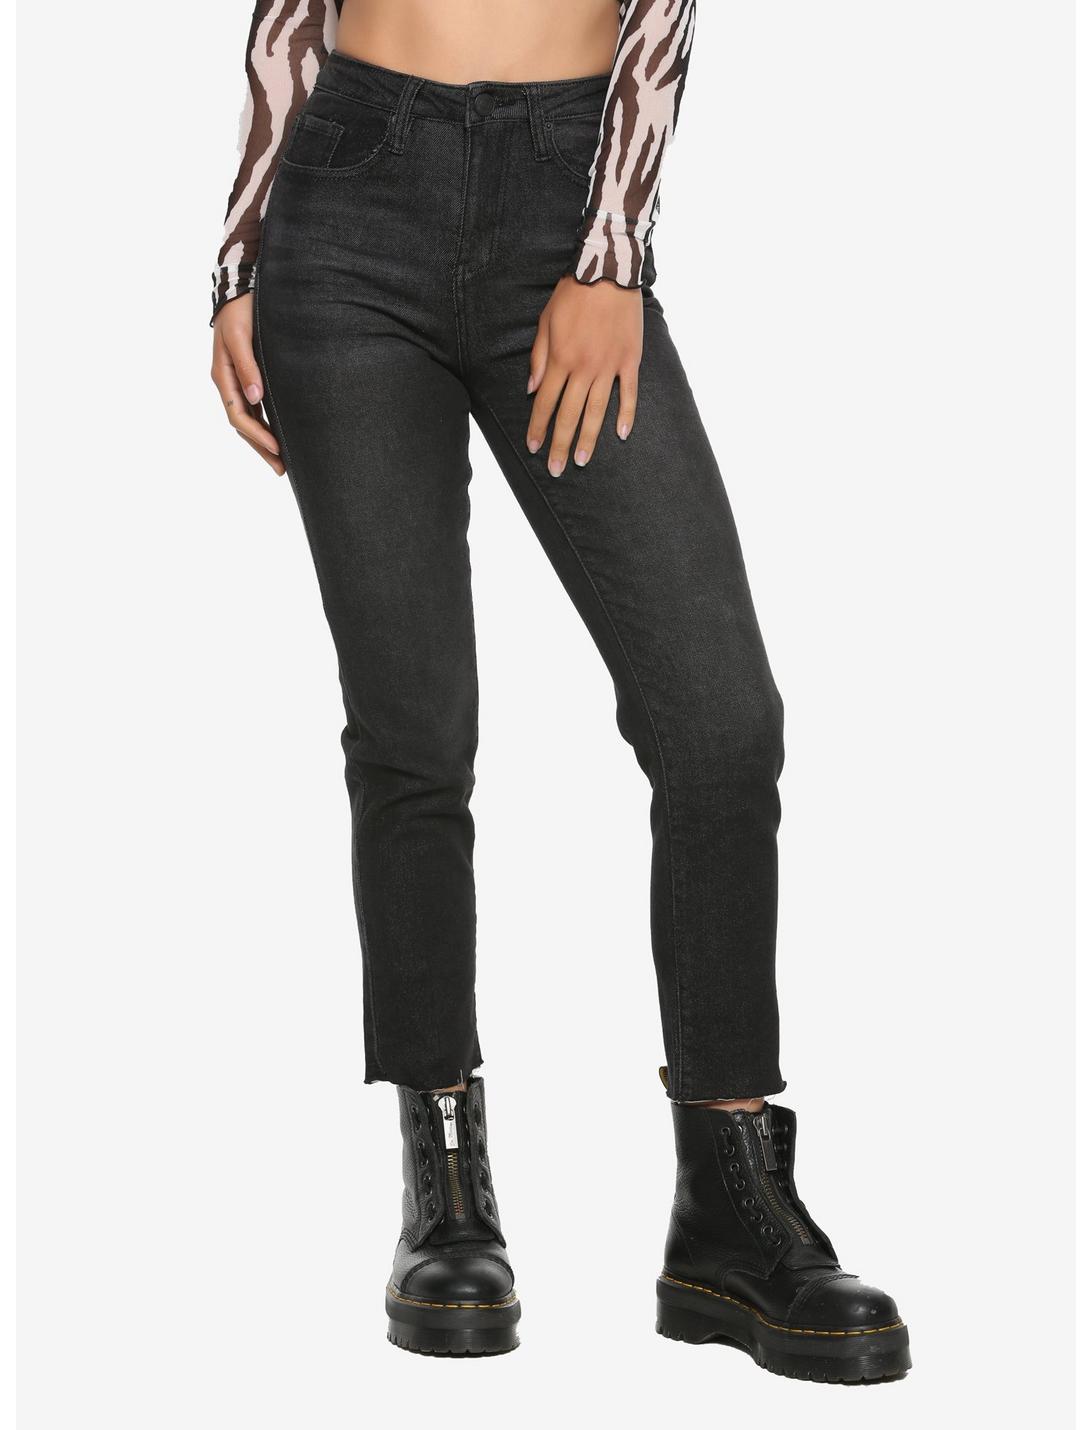 Black Straight Leg Hi-Rise Jeans, BLACK, hi-res